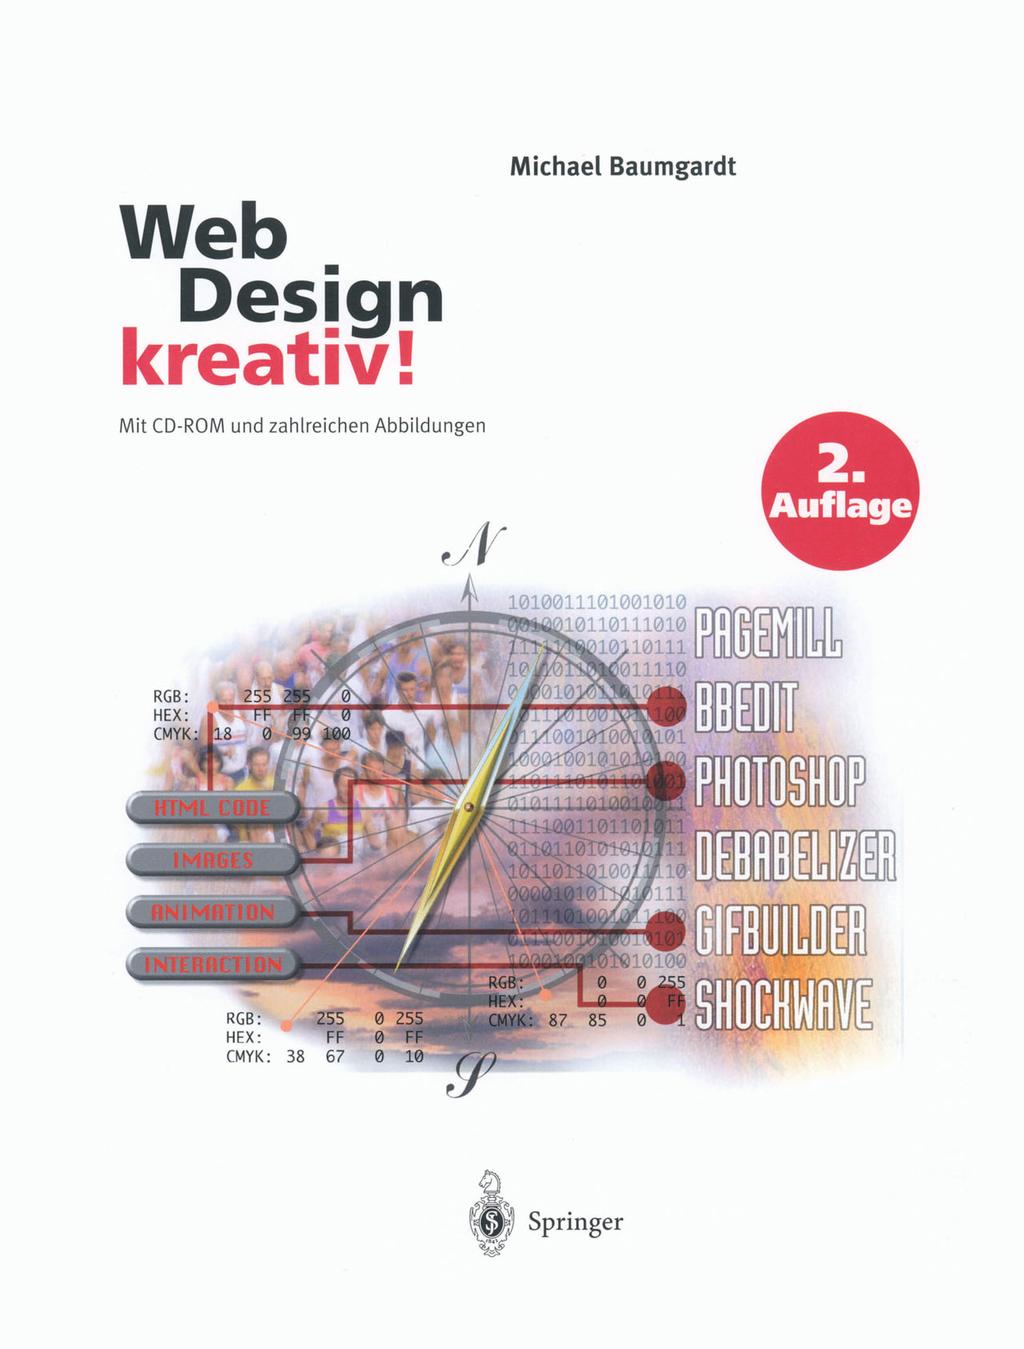 Michael Baumgardt Web Design kreativ! Mit CD-ROM und zahlreichen Abbildungen 2.